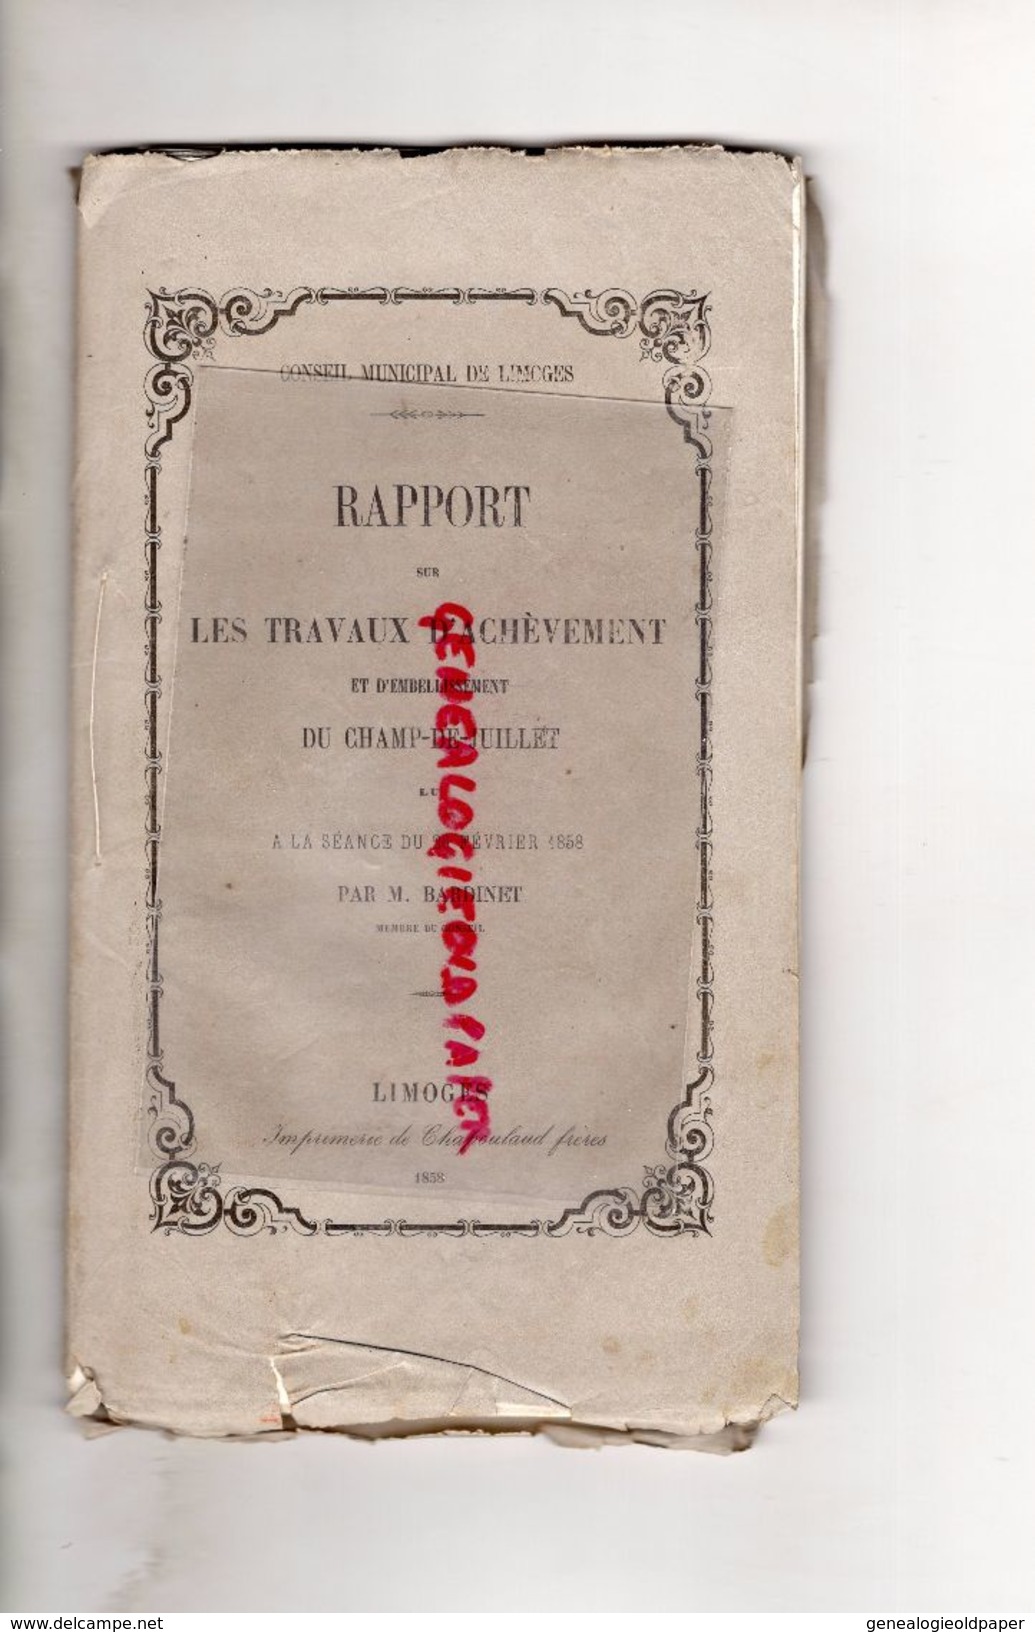 87 -LIMOGES -RARE RAPPORT ET PLAN SUR TRAVAUX ACHEVEMENT EMBELLISSEMENT CHAMP DE JUILLET -26 FEVRIER 1858- PAR BARDINET - Historical Documents